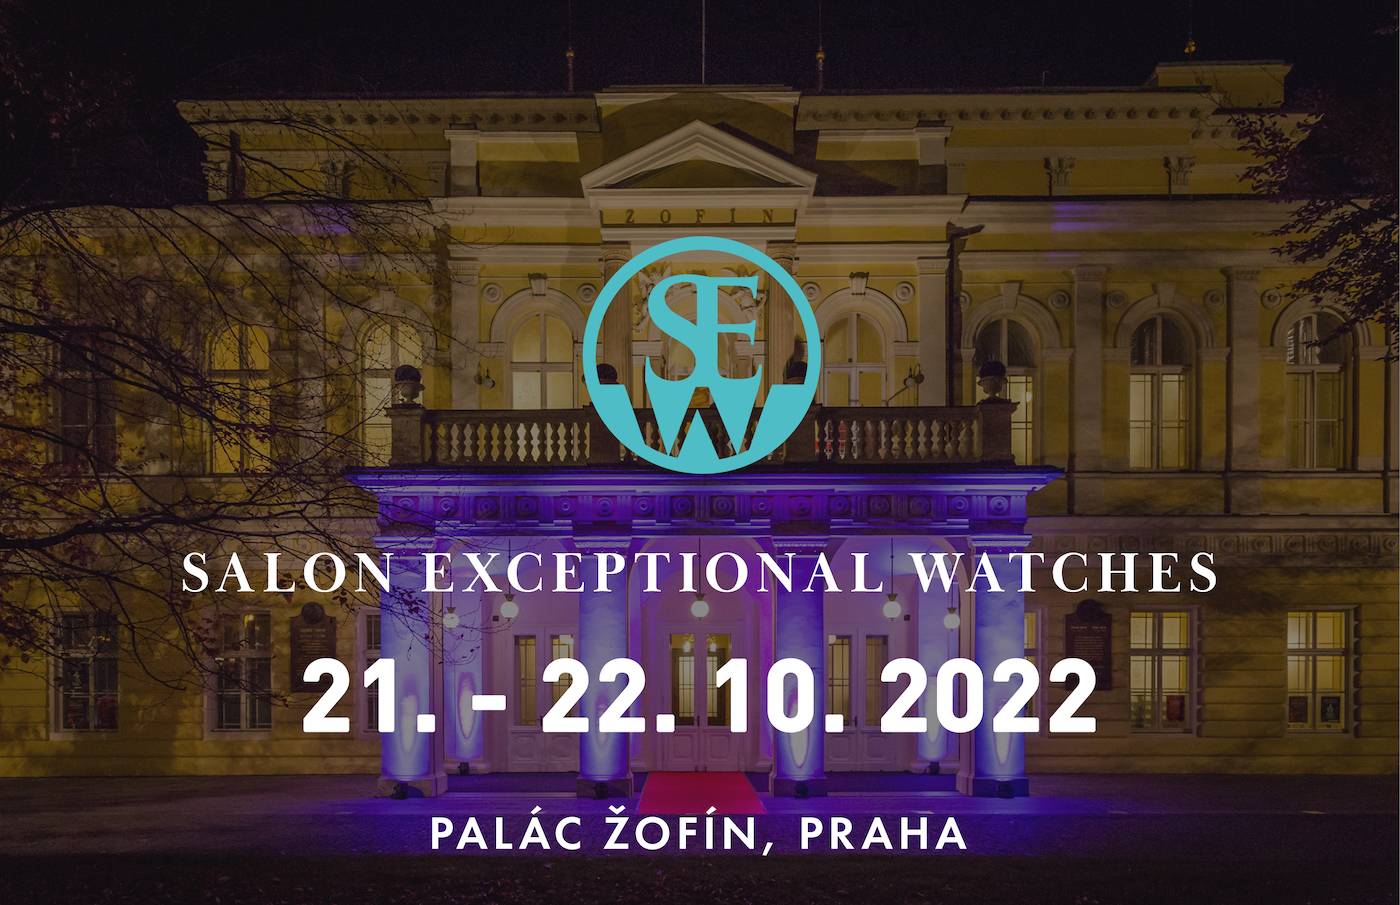 Presentando el 8º Salón de Relojes Excepcionales en Praga